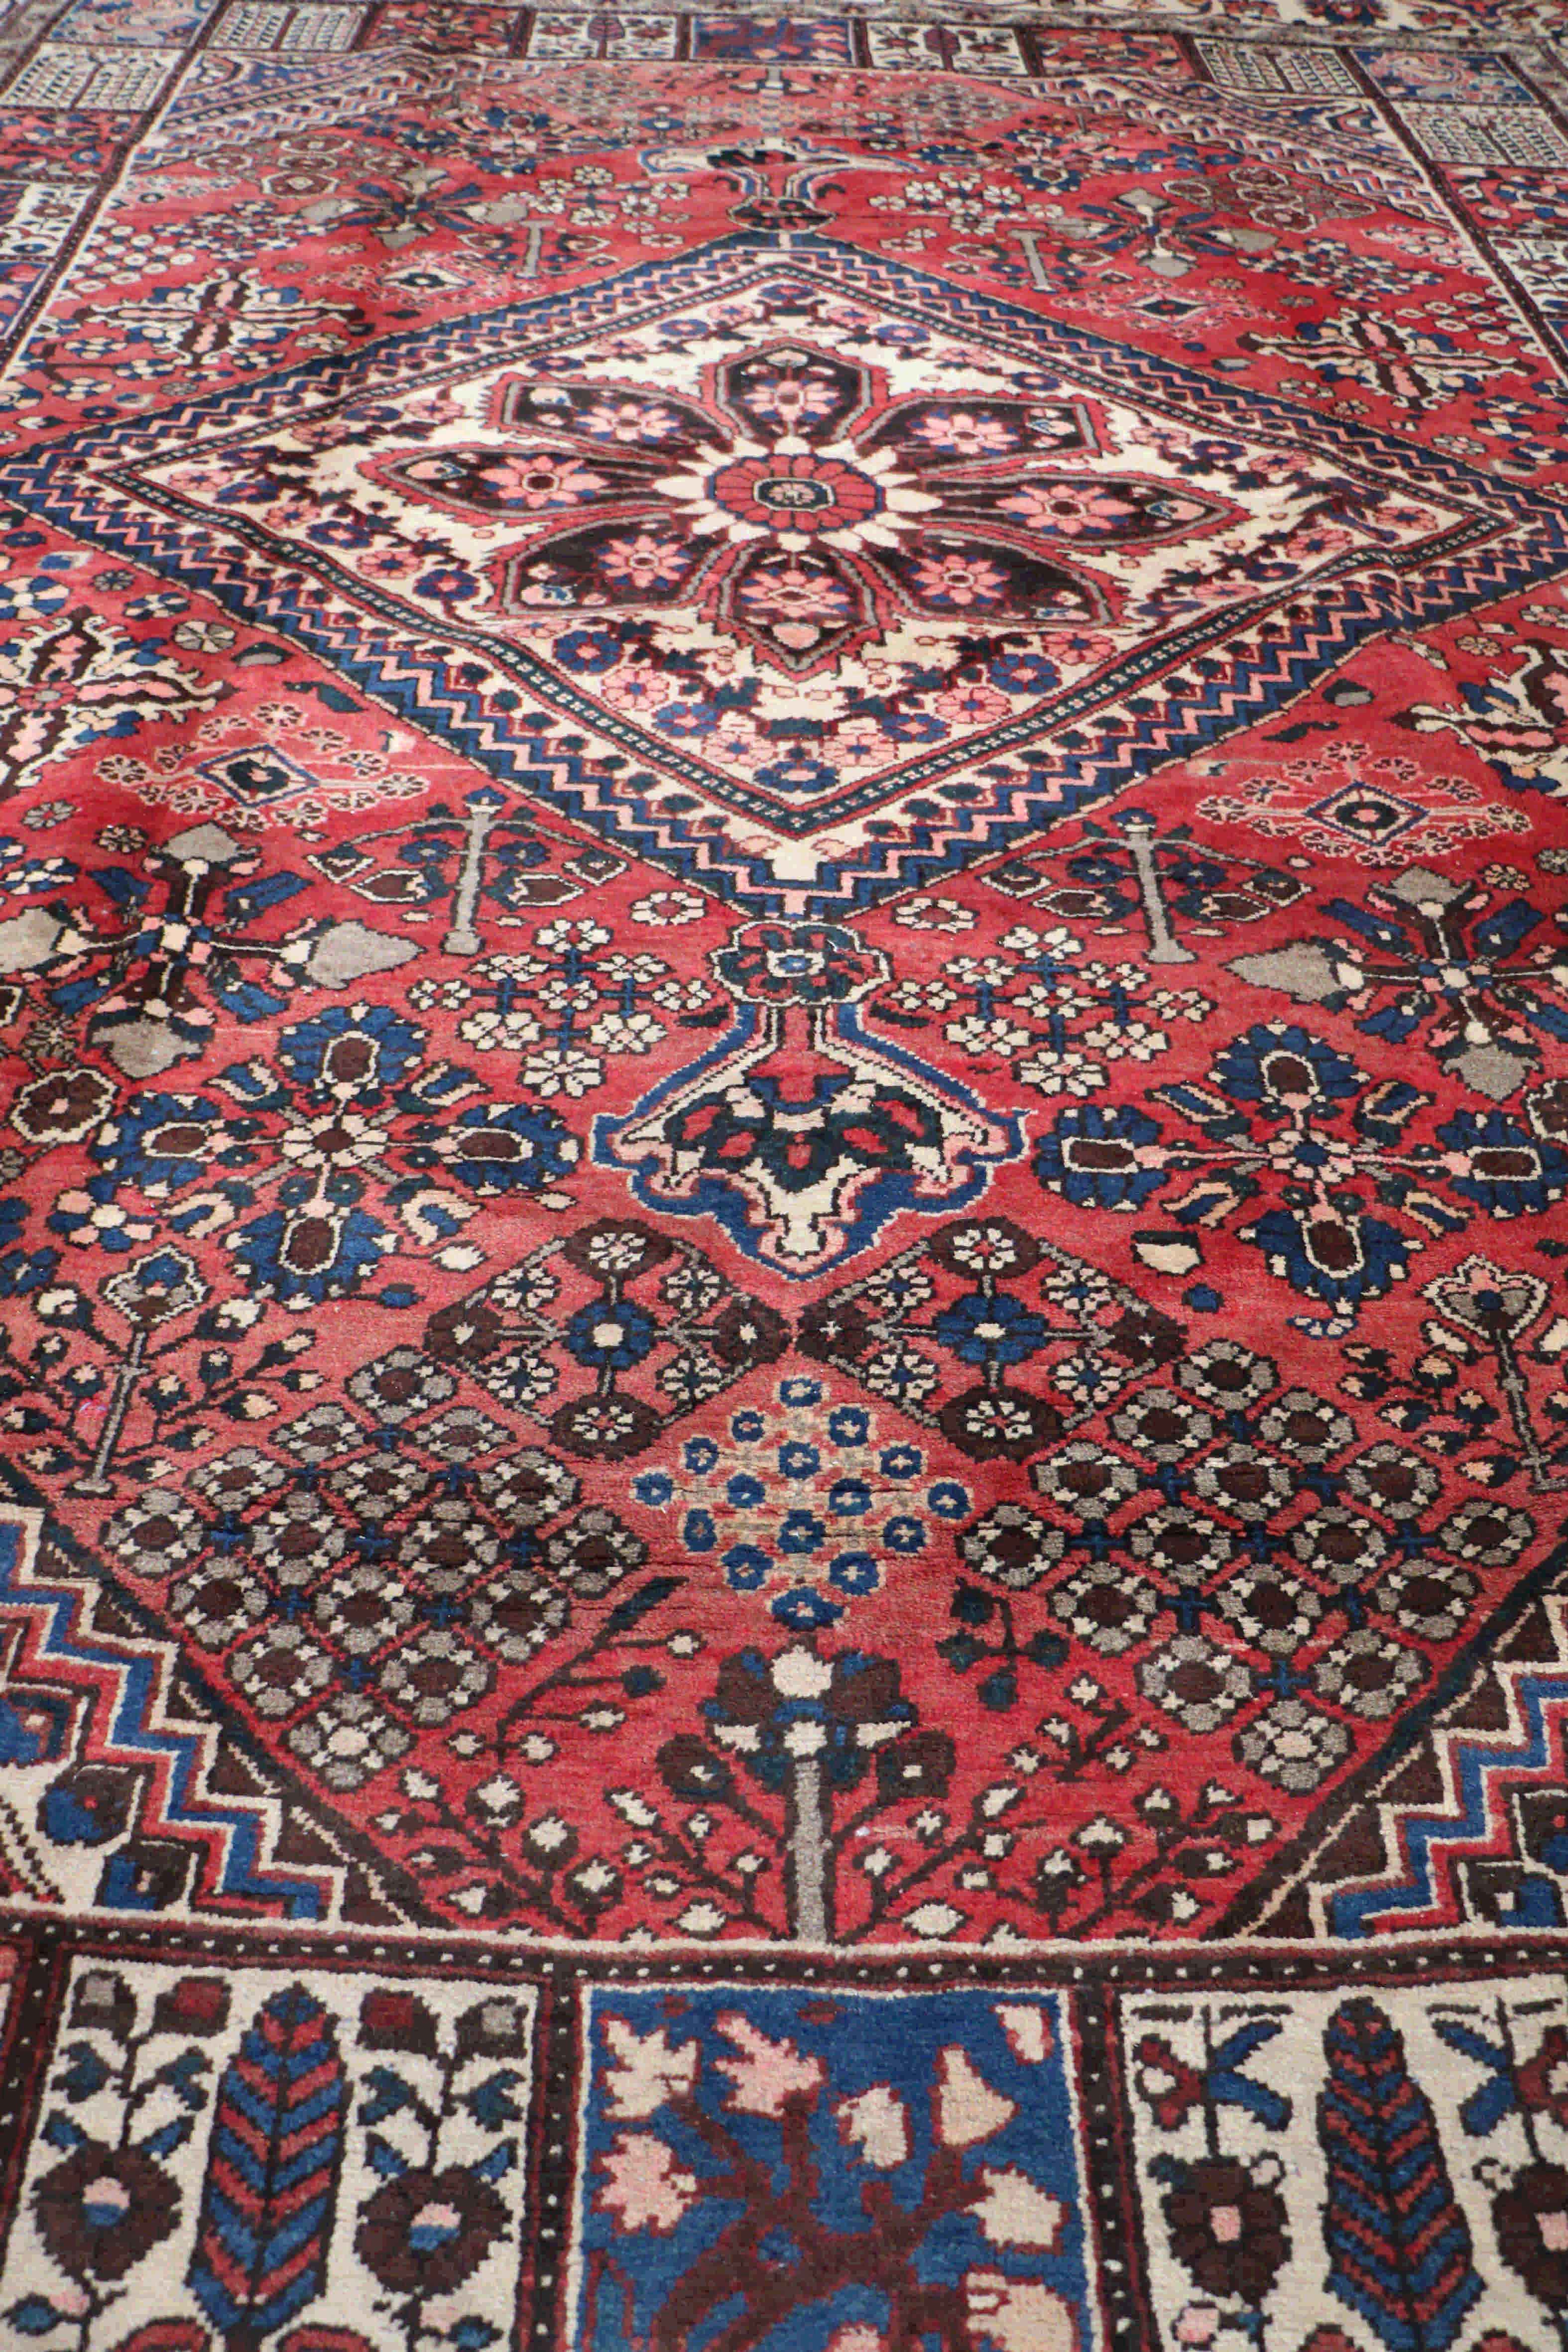 Red and blue old Bakhtiar rug